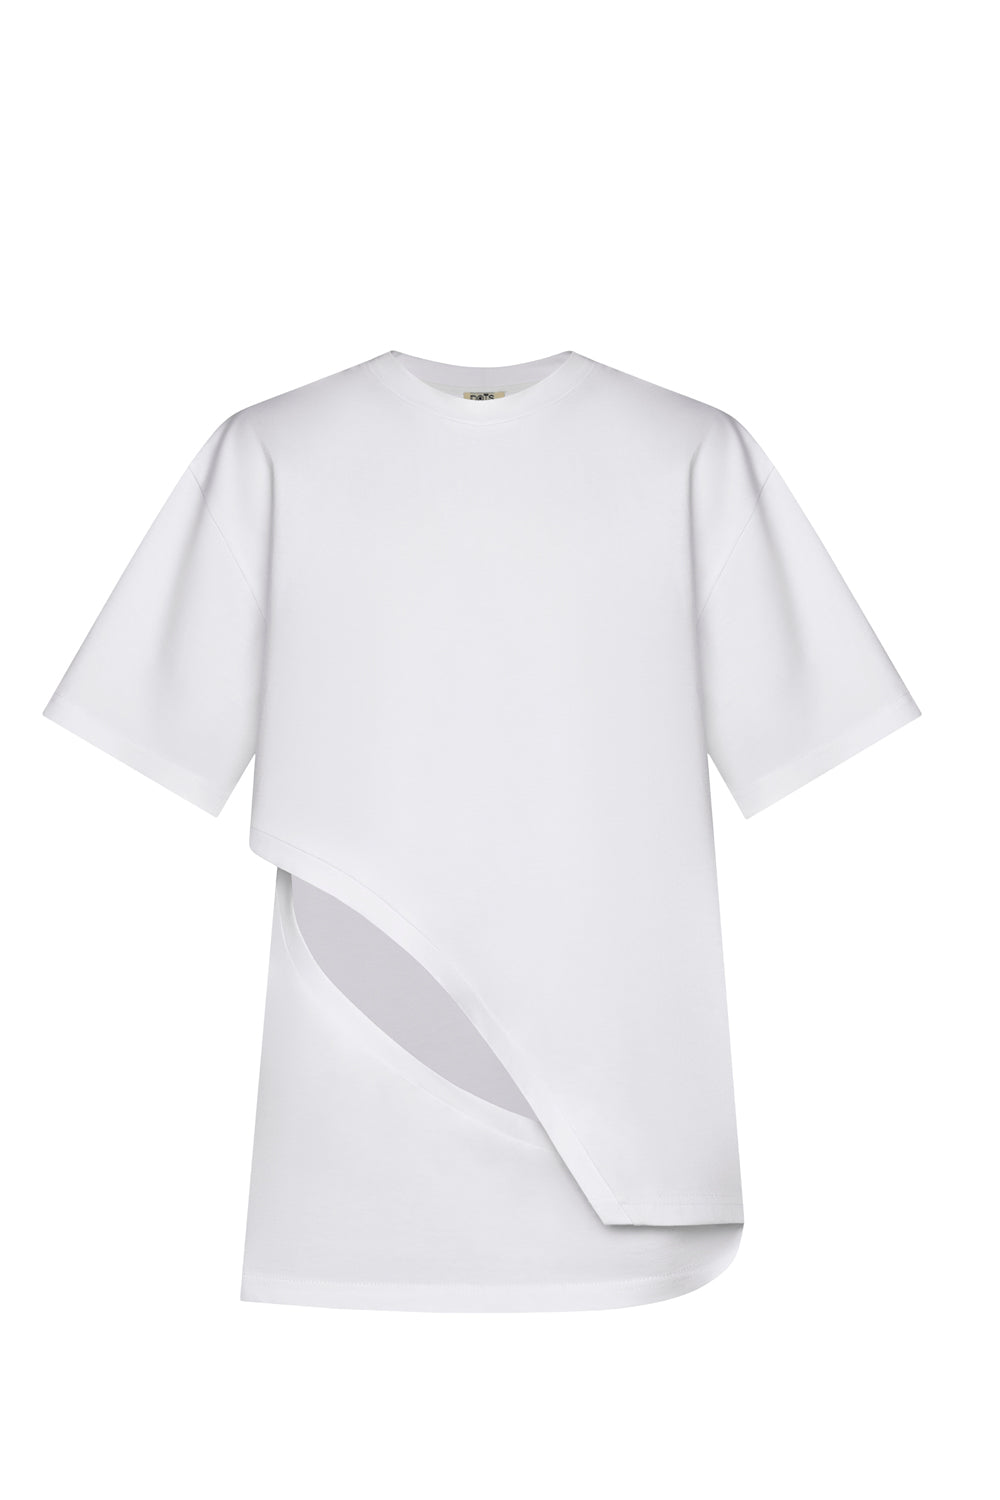 Cut Detailed White t-Shirt